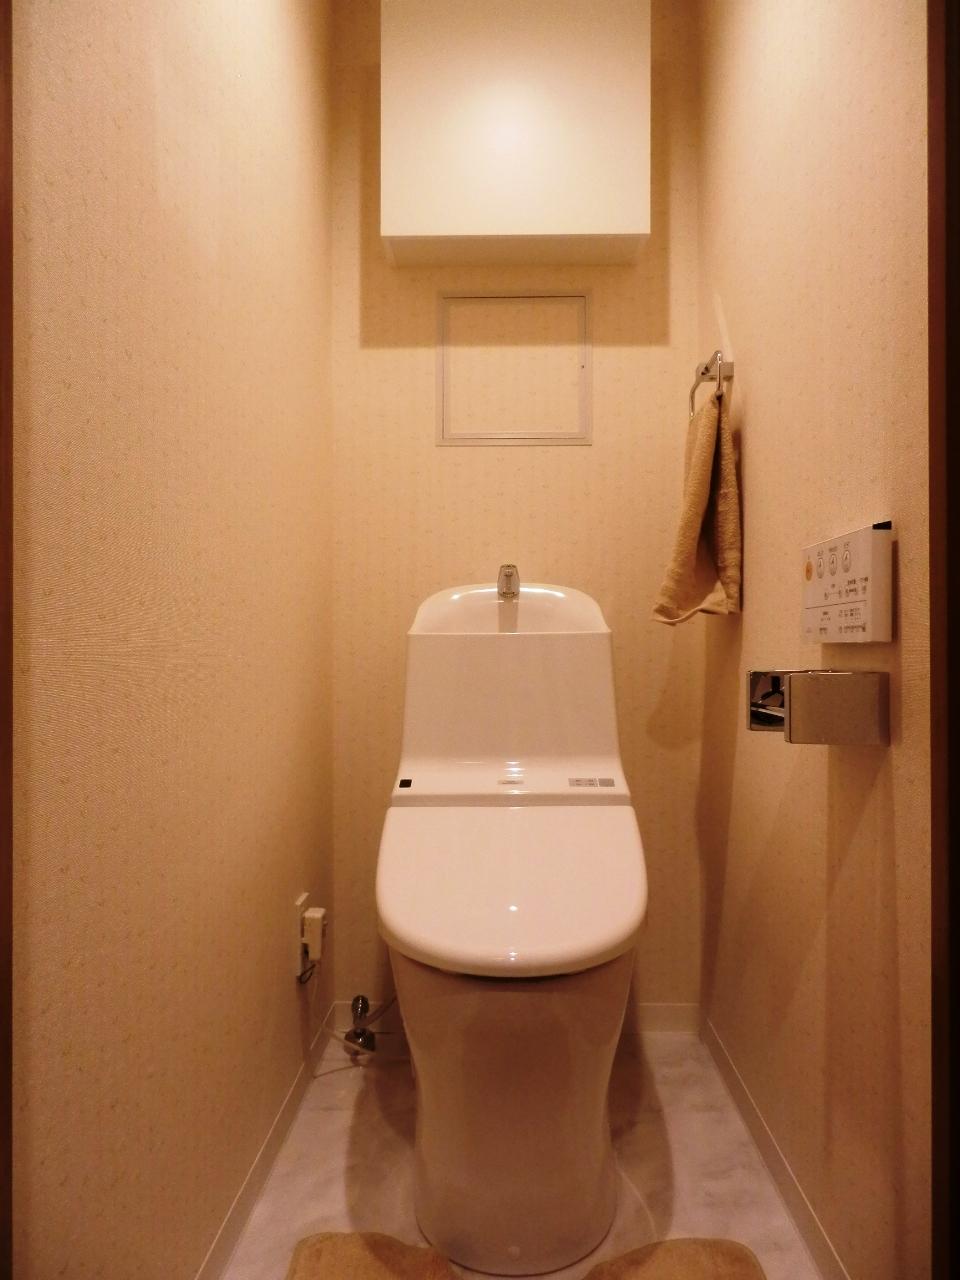 Toilet. Indoor (11 May 2013) Shooting New exchange